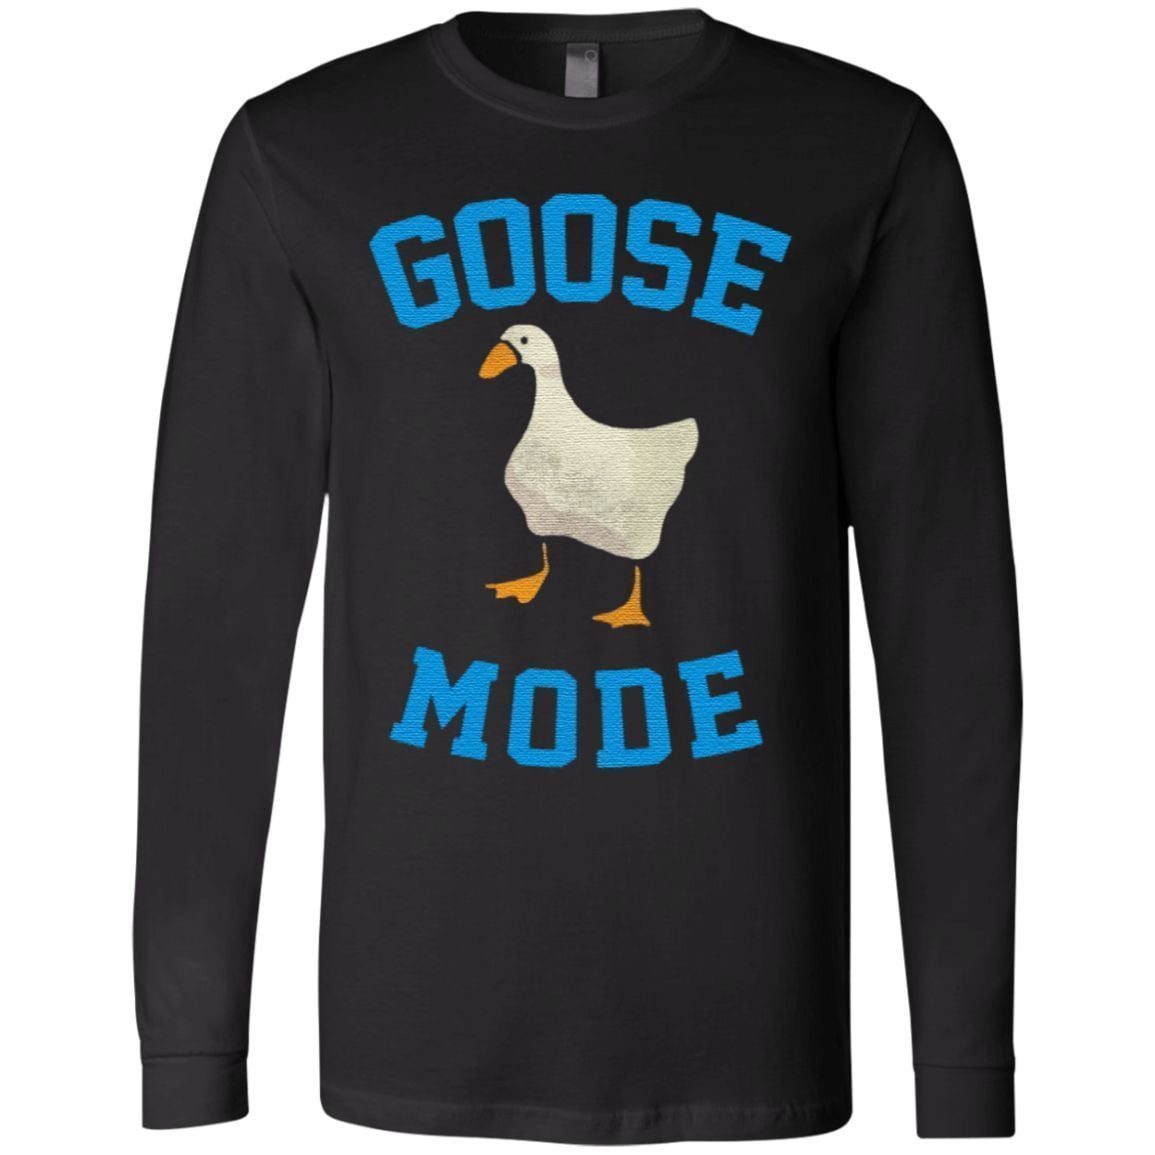 Goose Mode Duck T Shirt